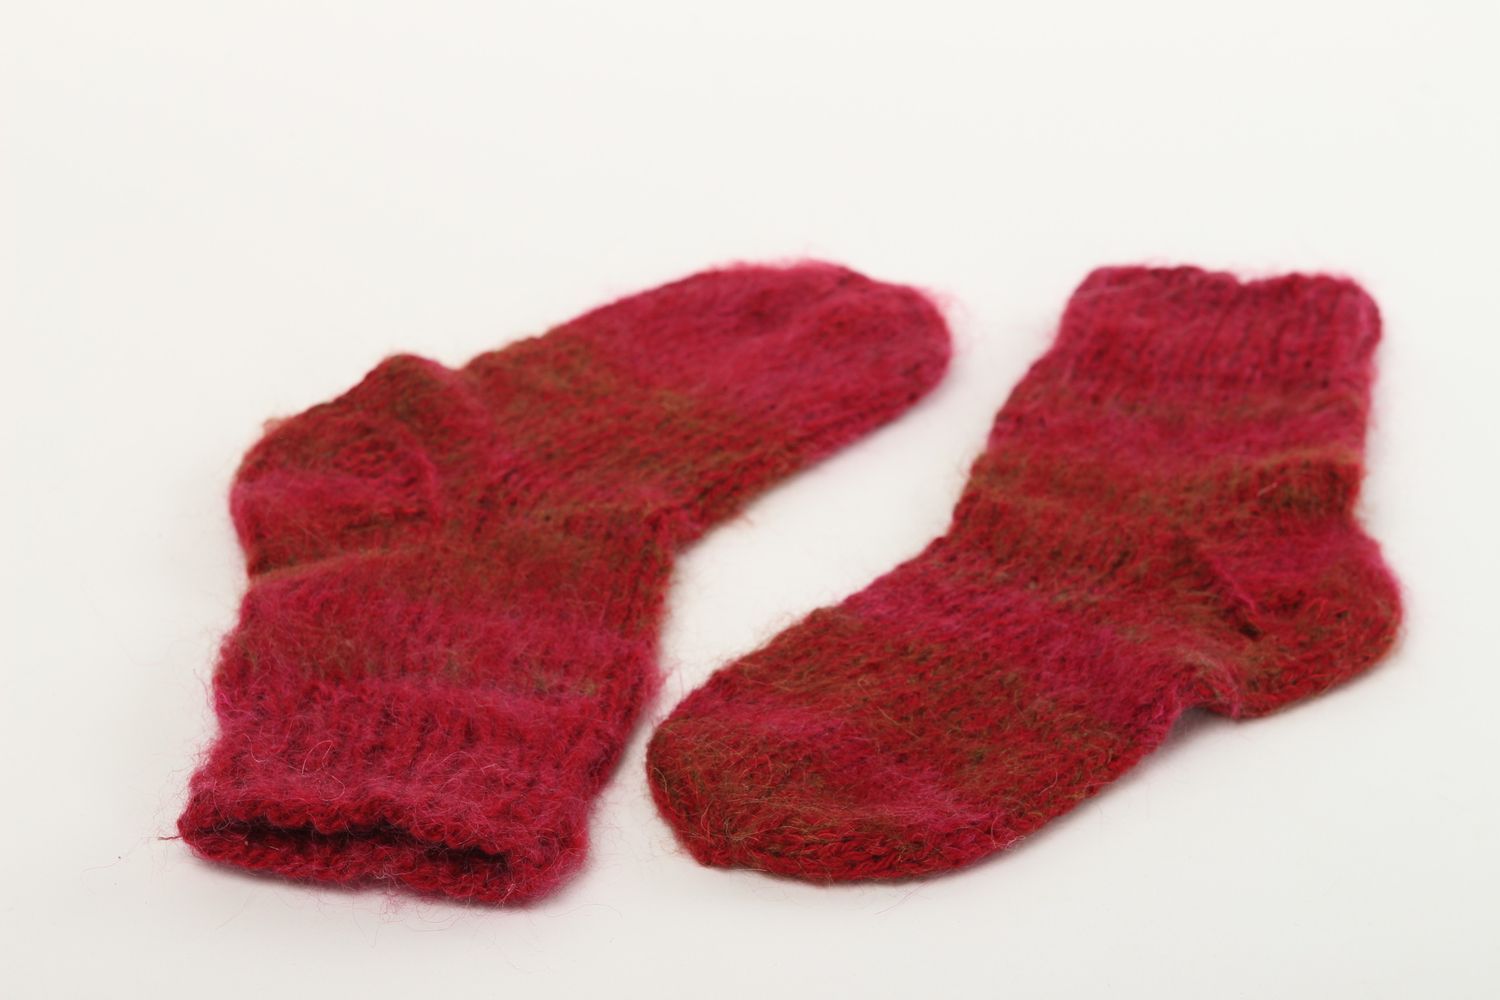 Homemade knitted woolen socks warm winter socks best wool socks gifts for women photo 3